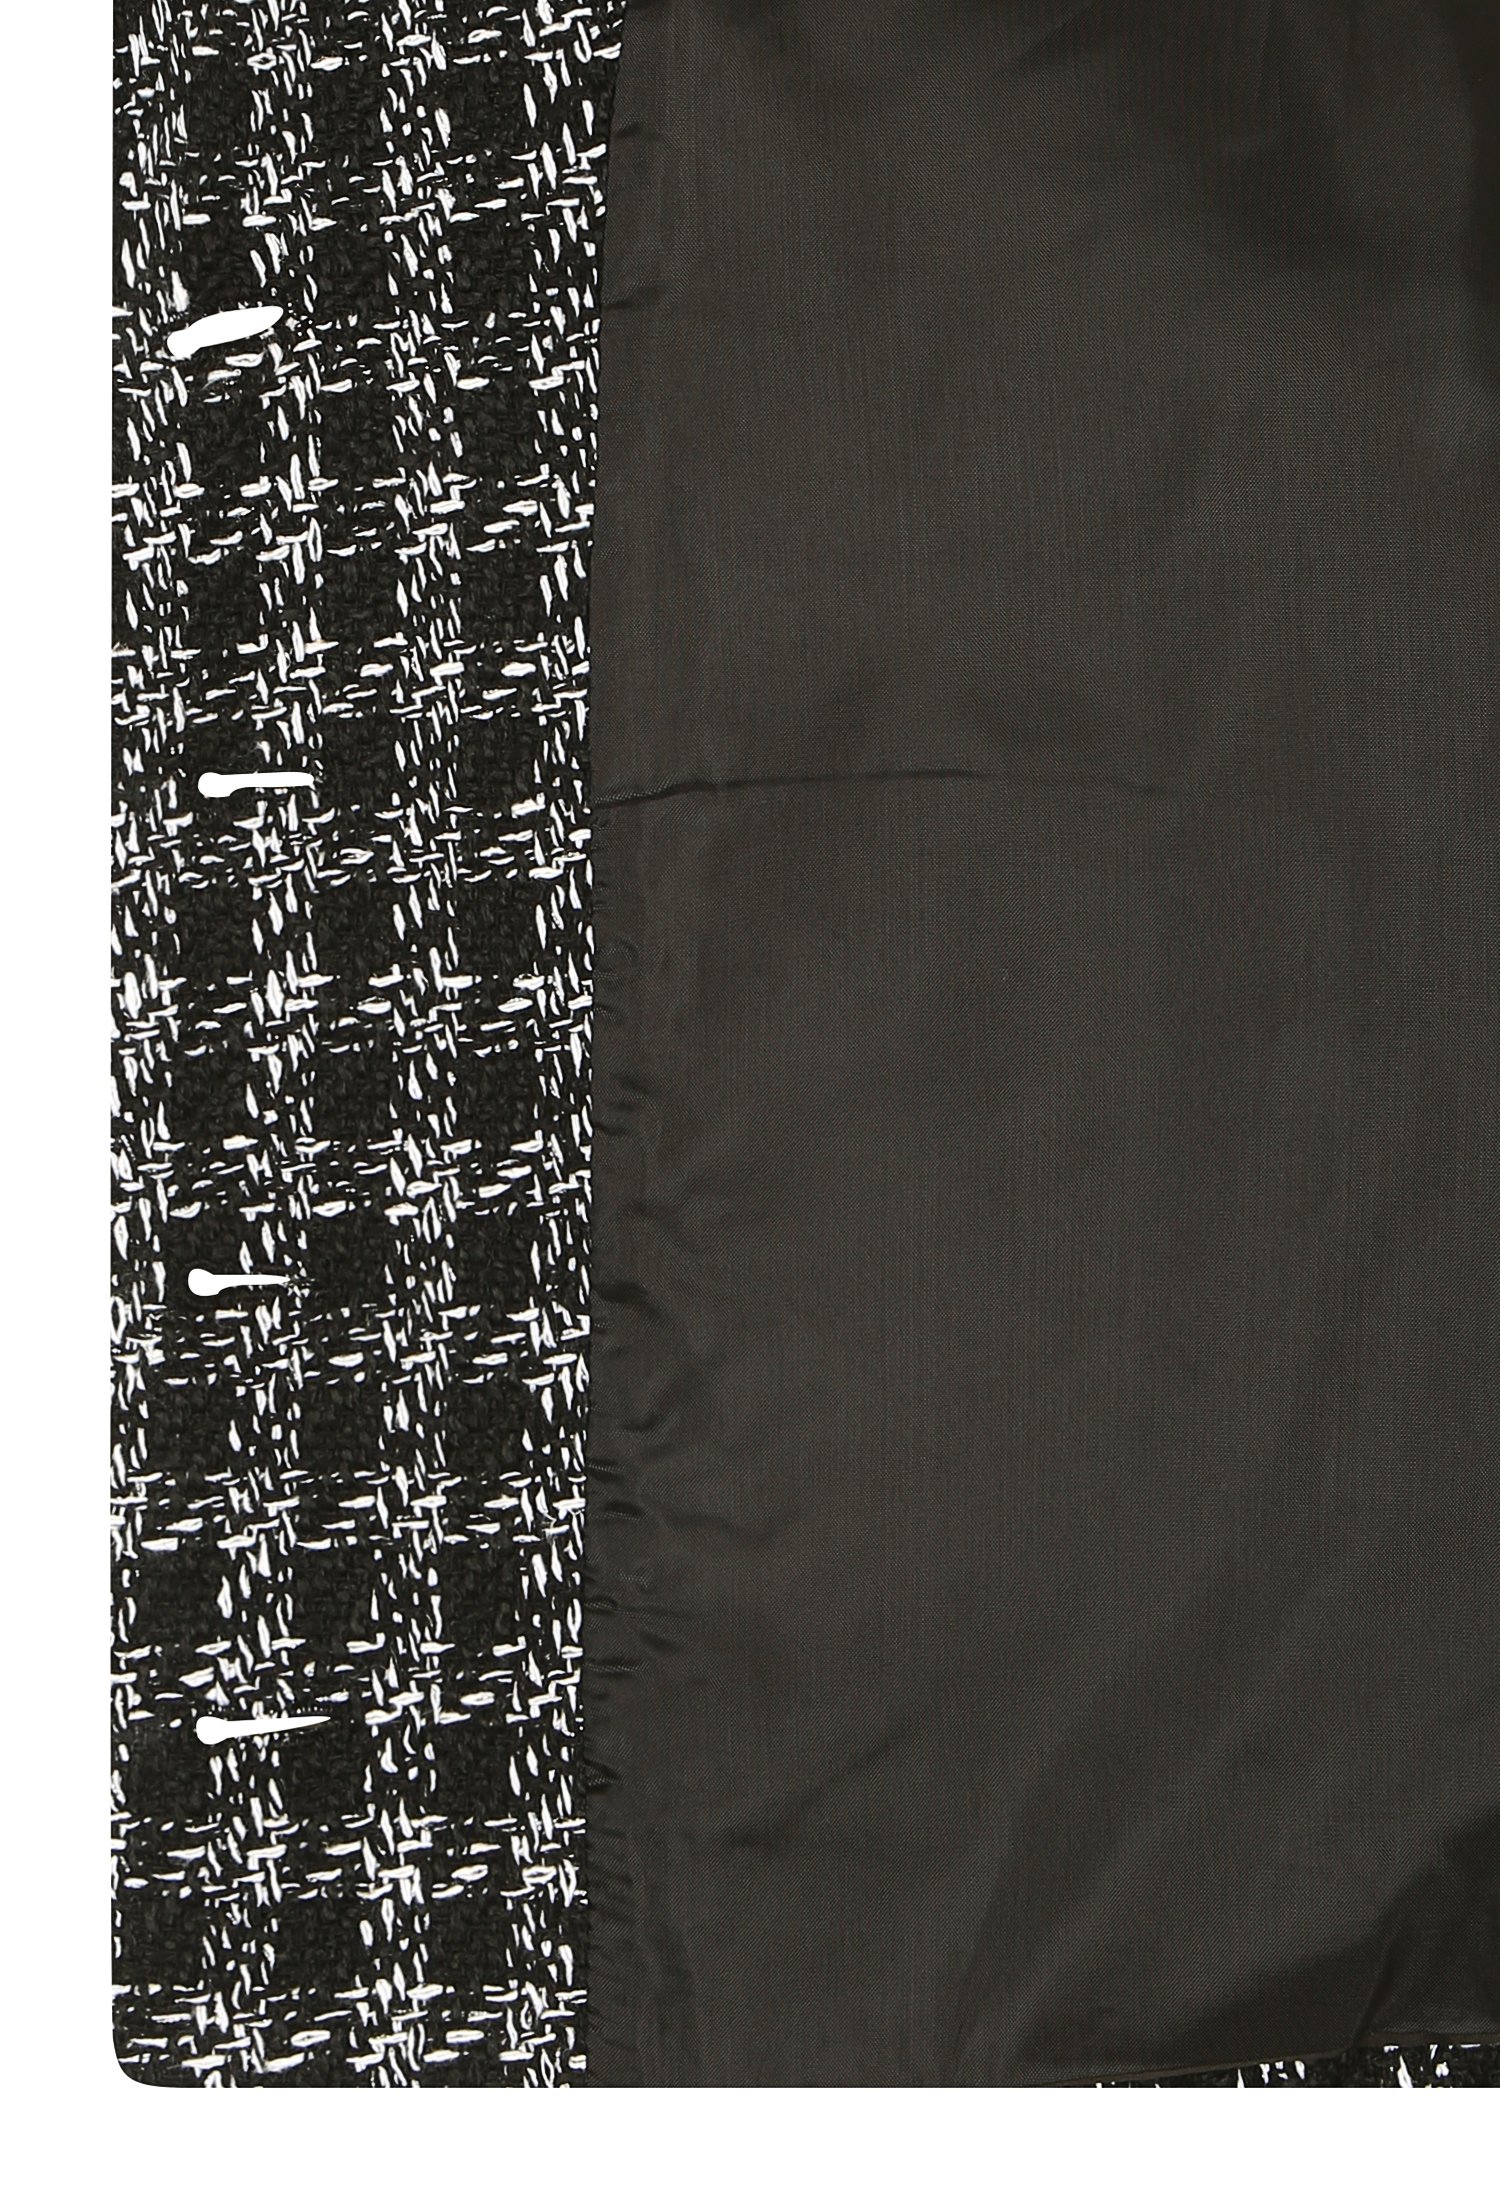 세일러 칼라 메탈사 체크 재킷 (BLACK)